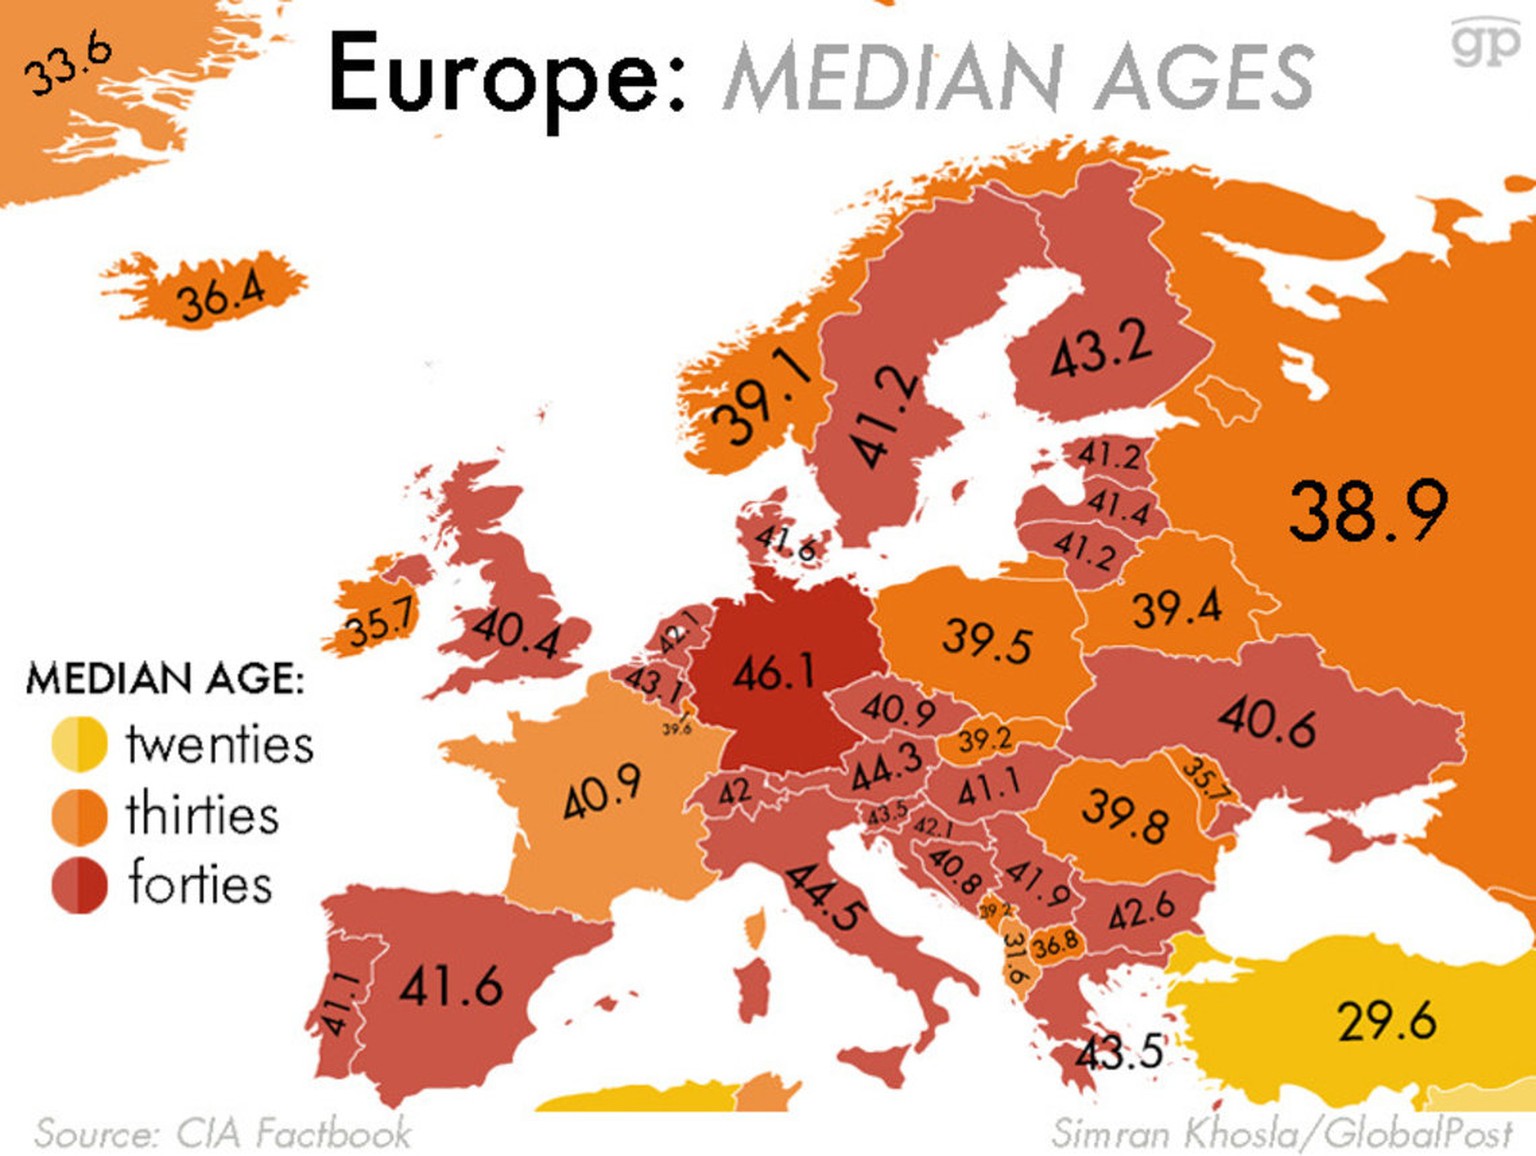 Schweizer sind im Durchschnitt 42 Jahre alt (Median-Alter). In Deutschland liegt der Median-Durchschnitt bei 46,1 Jahren, während Russen im Durchschnitt 38,9 Jahre alt sind. Das heisst, dass jeweils g ...